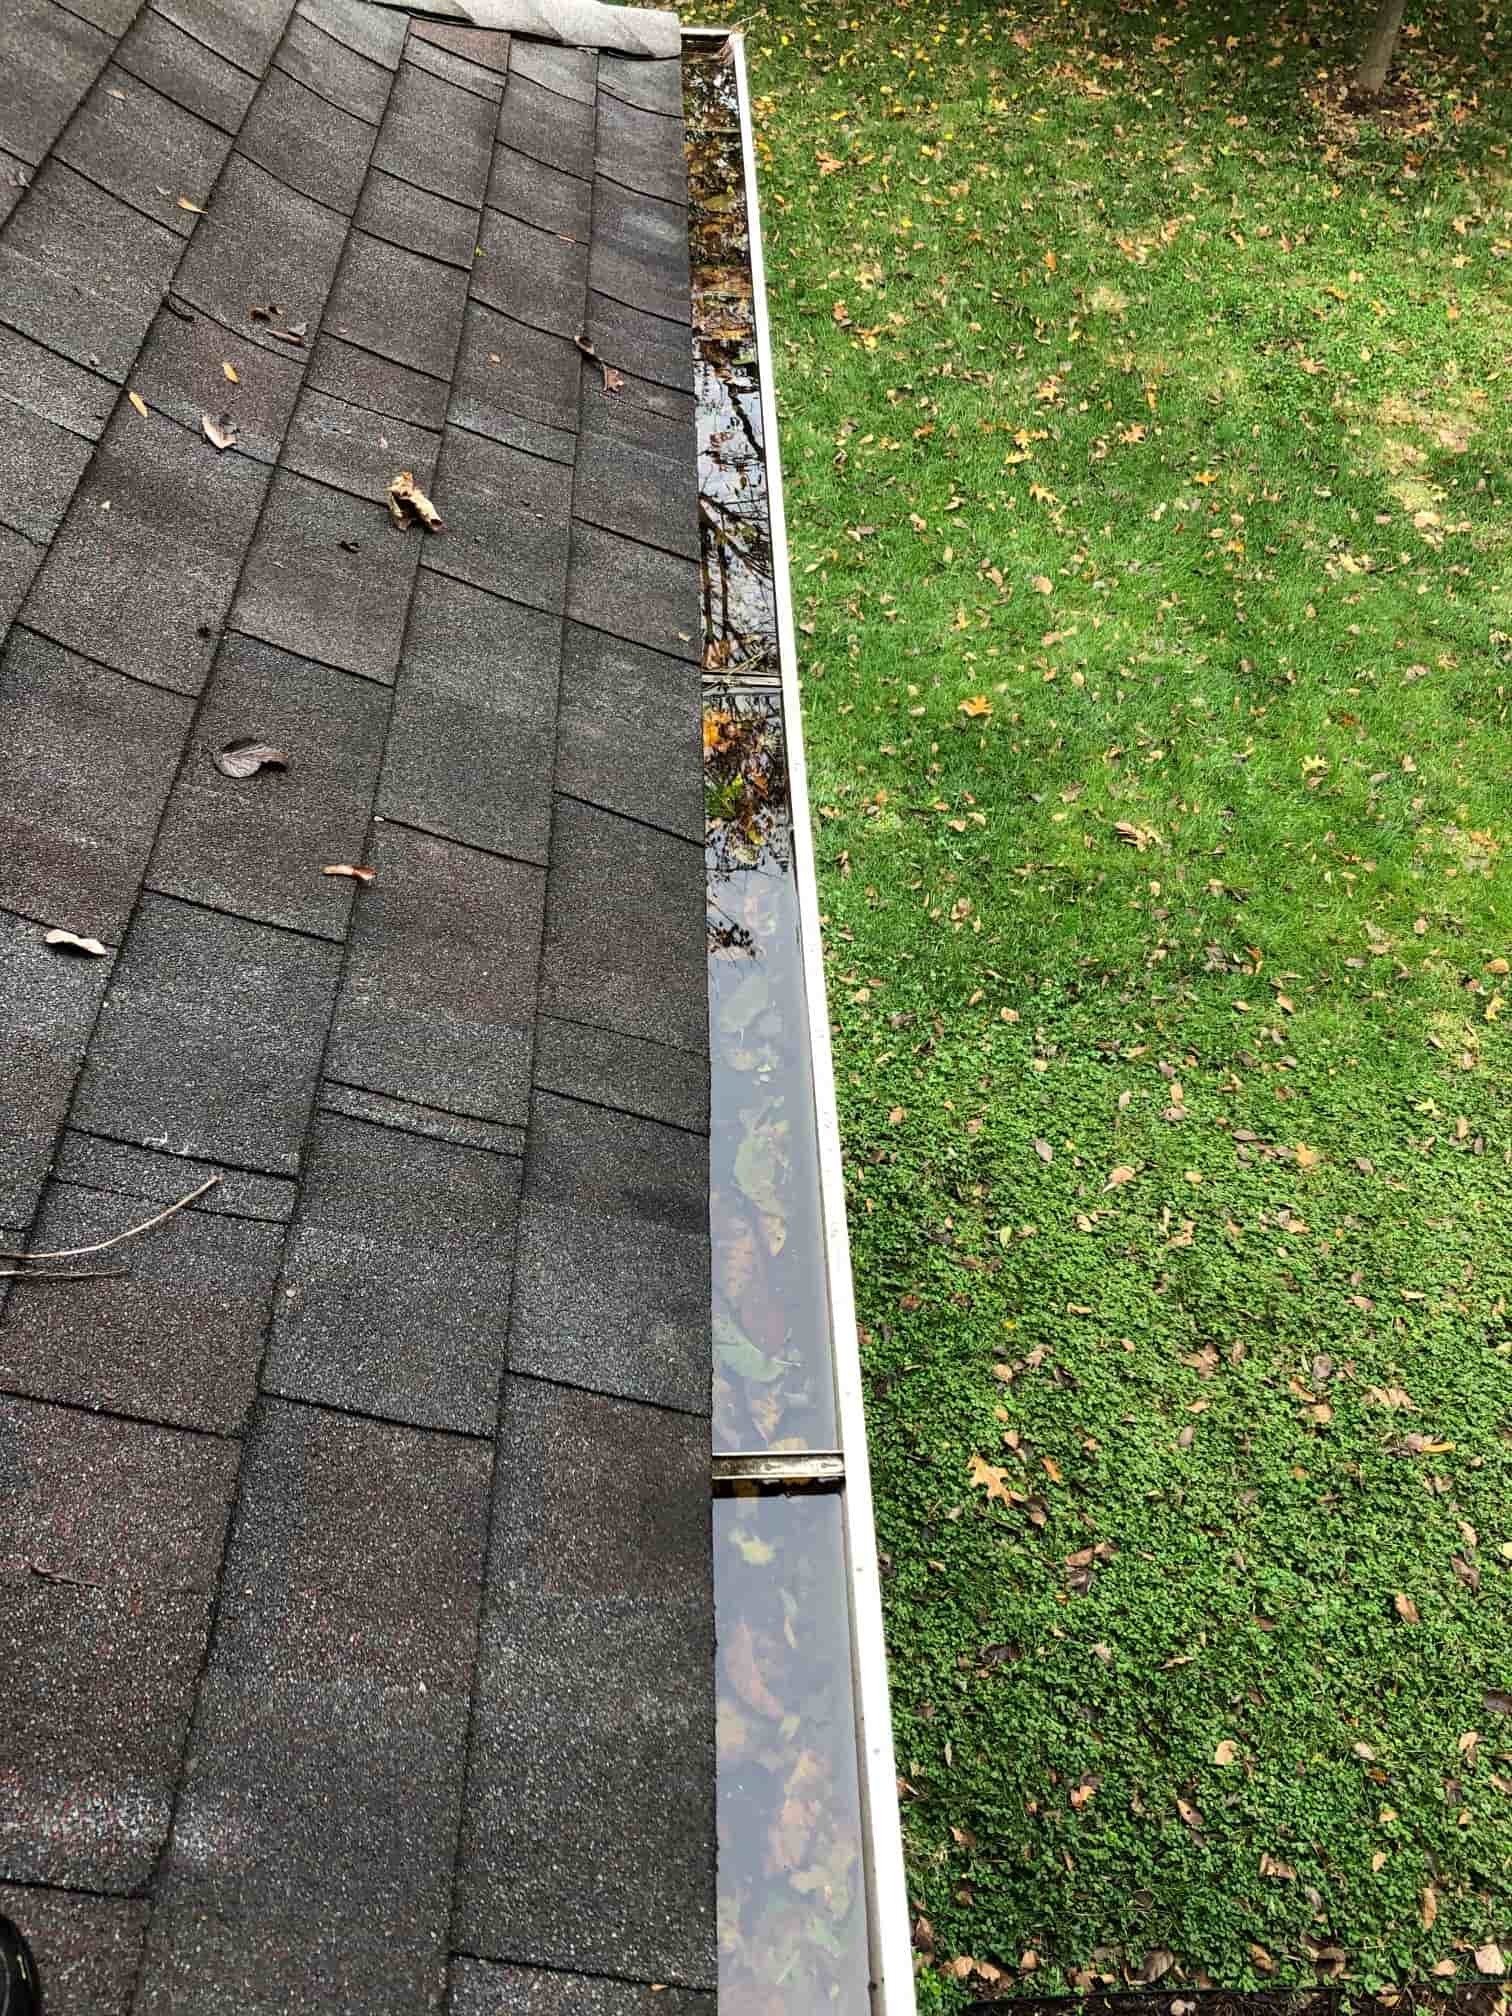 repairing gutters